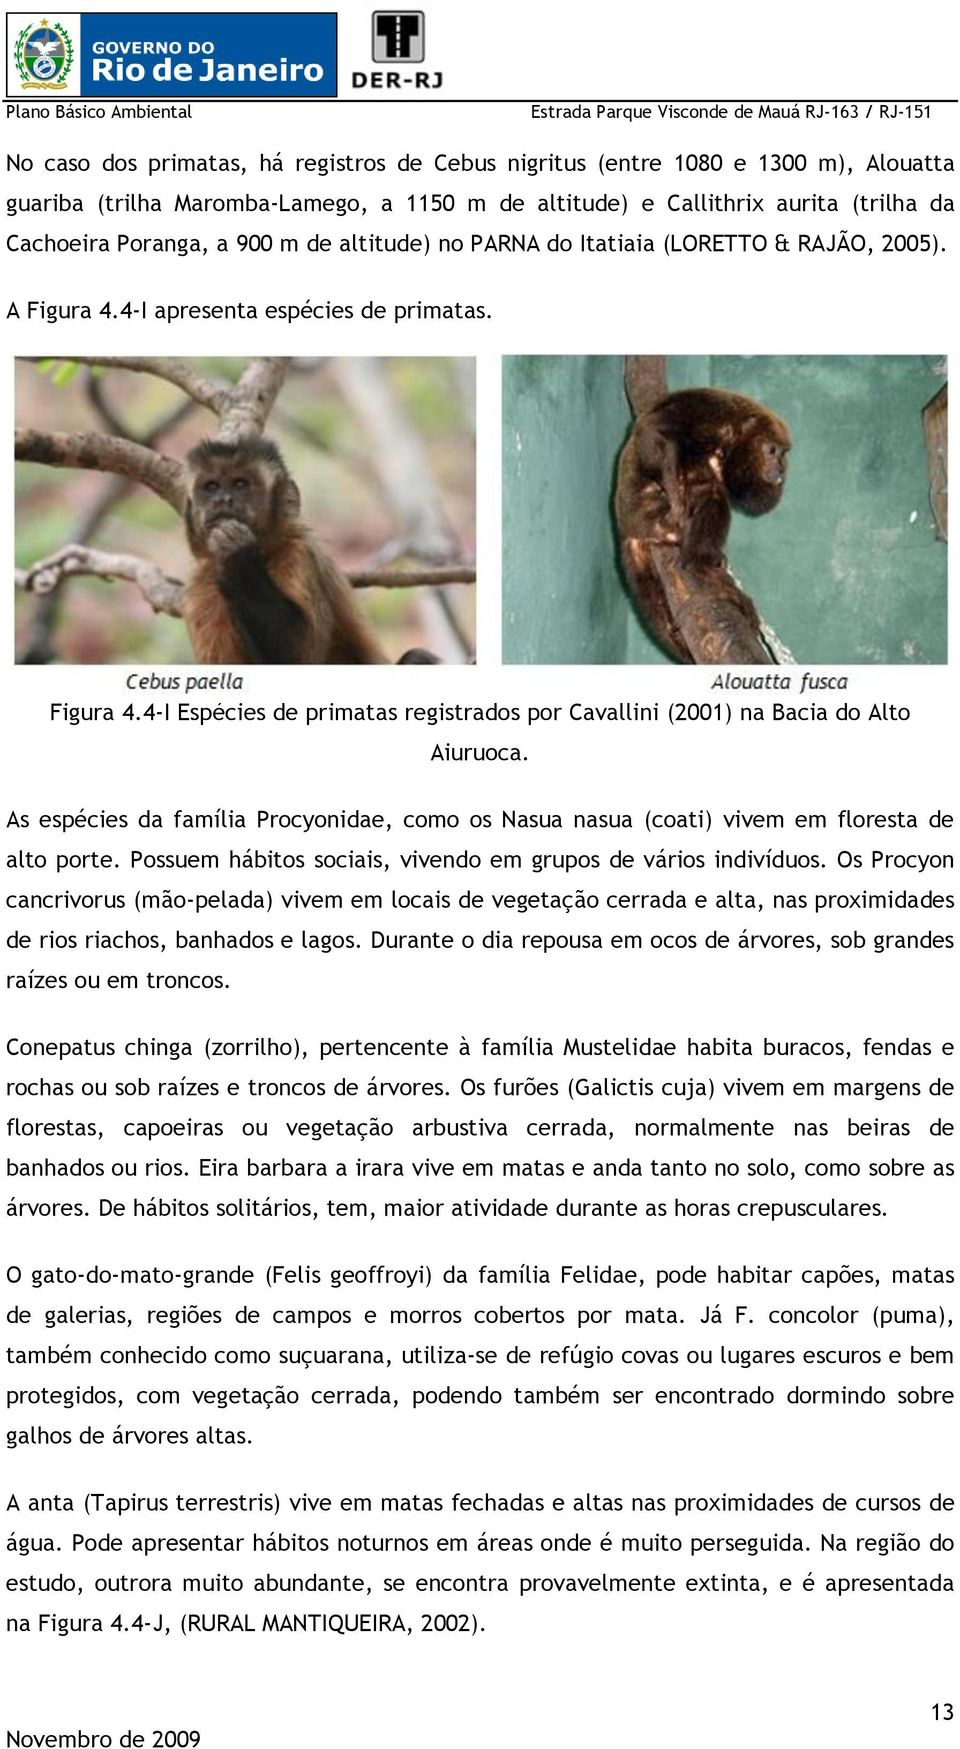 As espécies da família Procyonidae, como os Nasua nasua (coati) vivem em floresta de alto porte. Possuem hábitos sociais, vivendo em grupos de vários indivíduos.